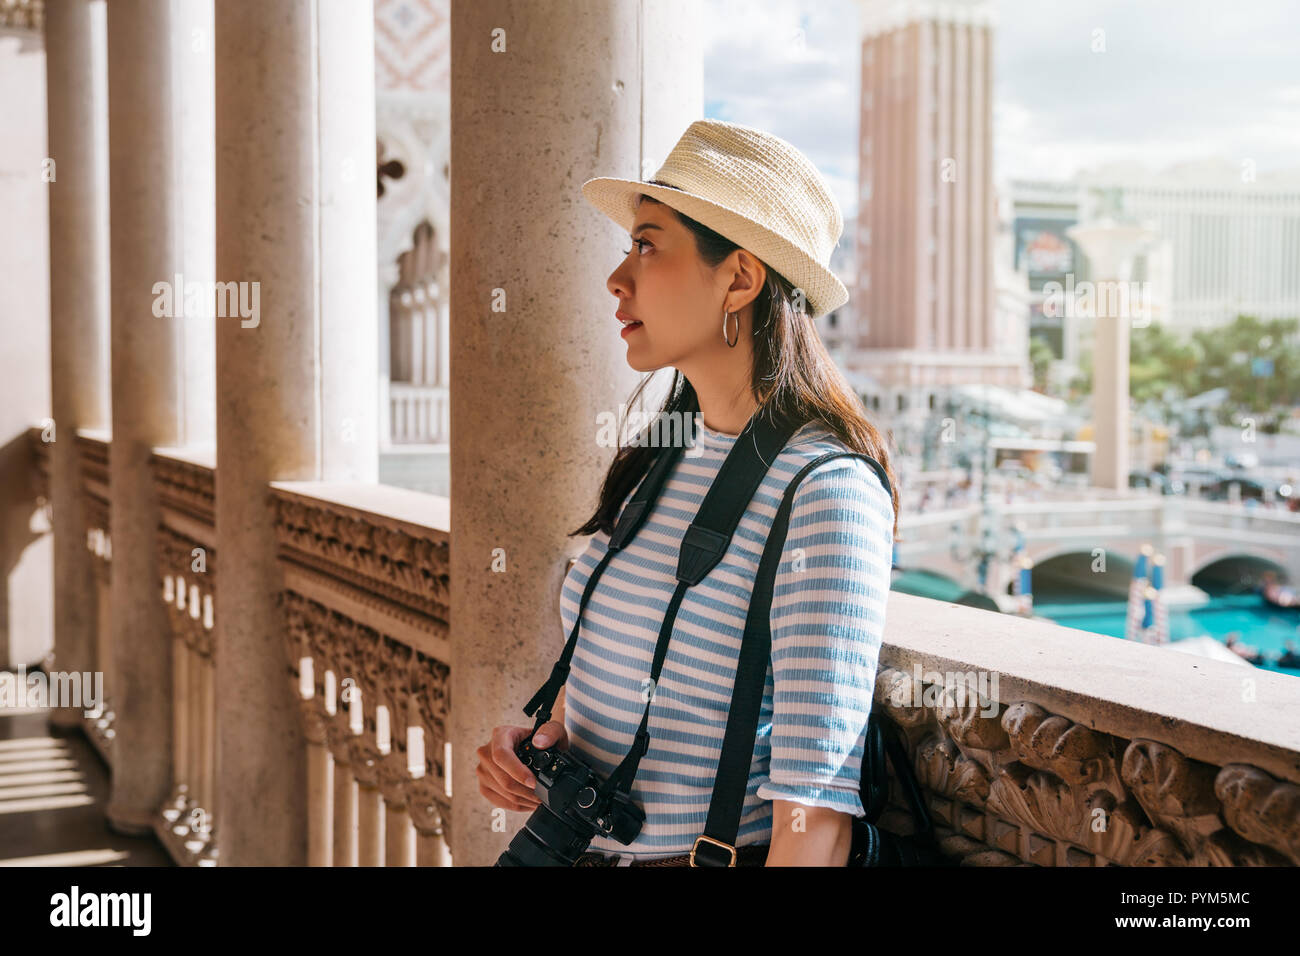 Weibliche Touristen stehend im Flur im klassischen Design Gebäude. junge Reisende entspannen, die erstaunlich schöne Decke. lady Fotograf Stockfoto